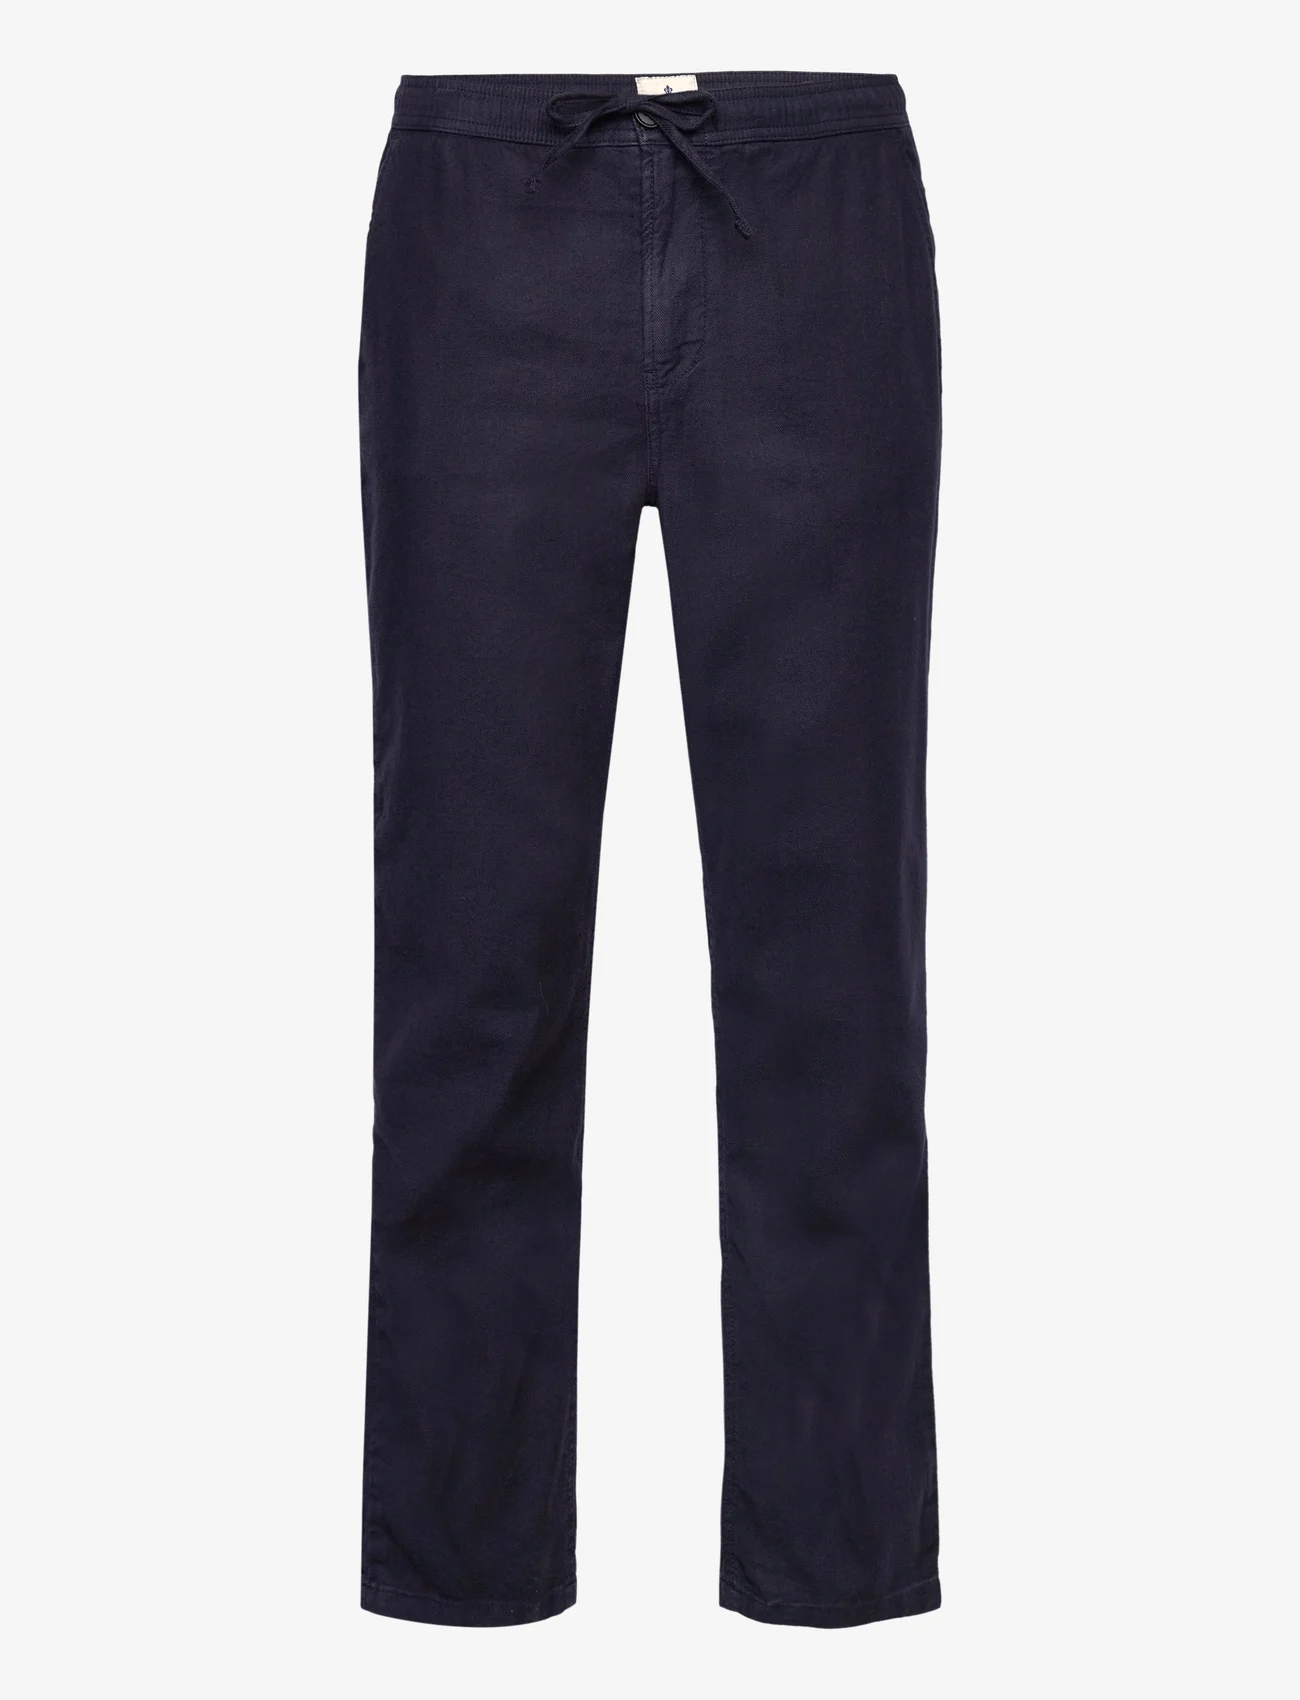 Morris - Fenix Linen Trouser - nordic style - blue - 0